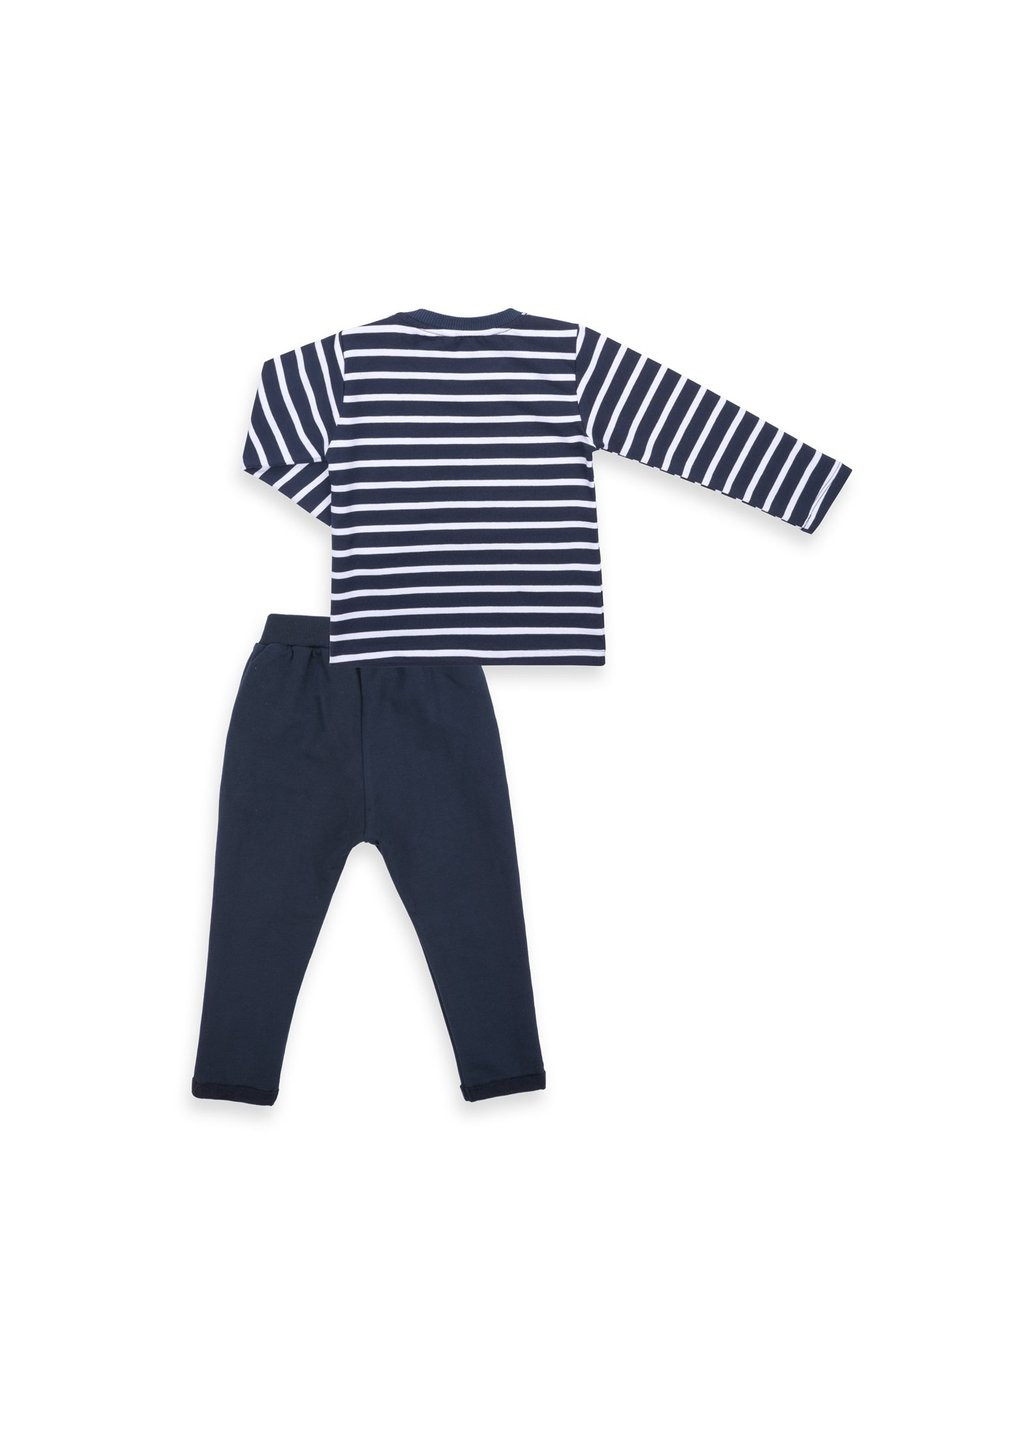 Комбинированный демисезонный набор детской одежды в полосочку и с карманчиком (8999-80b-darkblue) Breeze